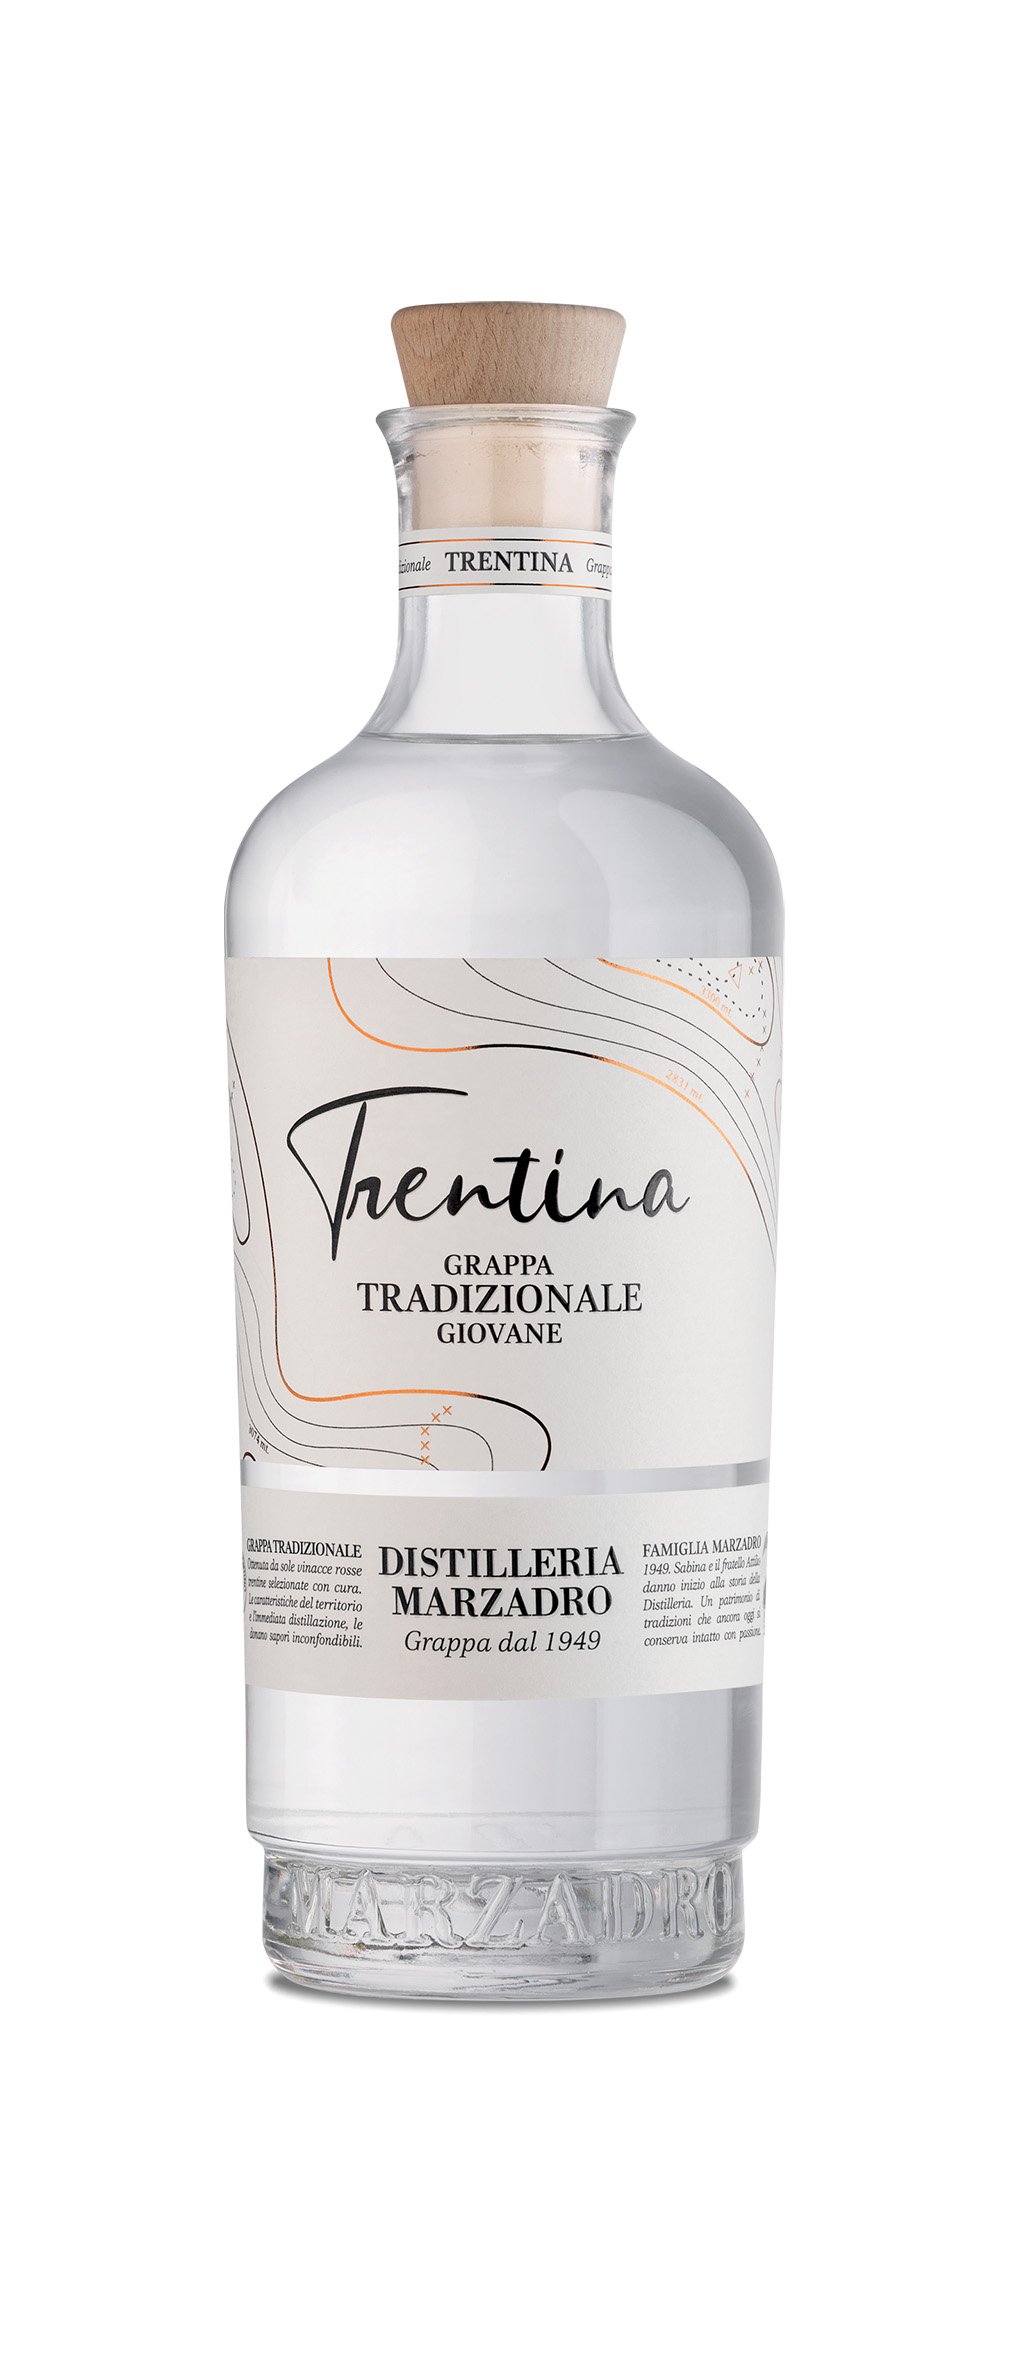 Südtiroler Trentina Marzadro 0,5l und - und giovane Vinothek La Munzert 41% Feinkost Tradizionale Italienische Grappa Weine, Vol. - mehr